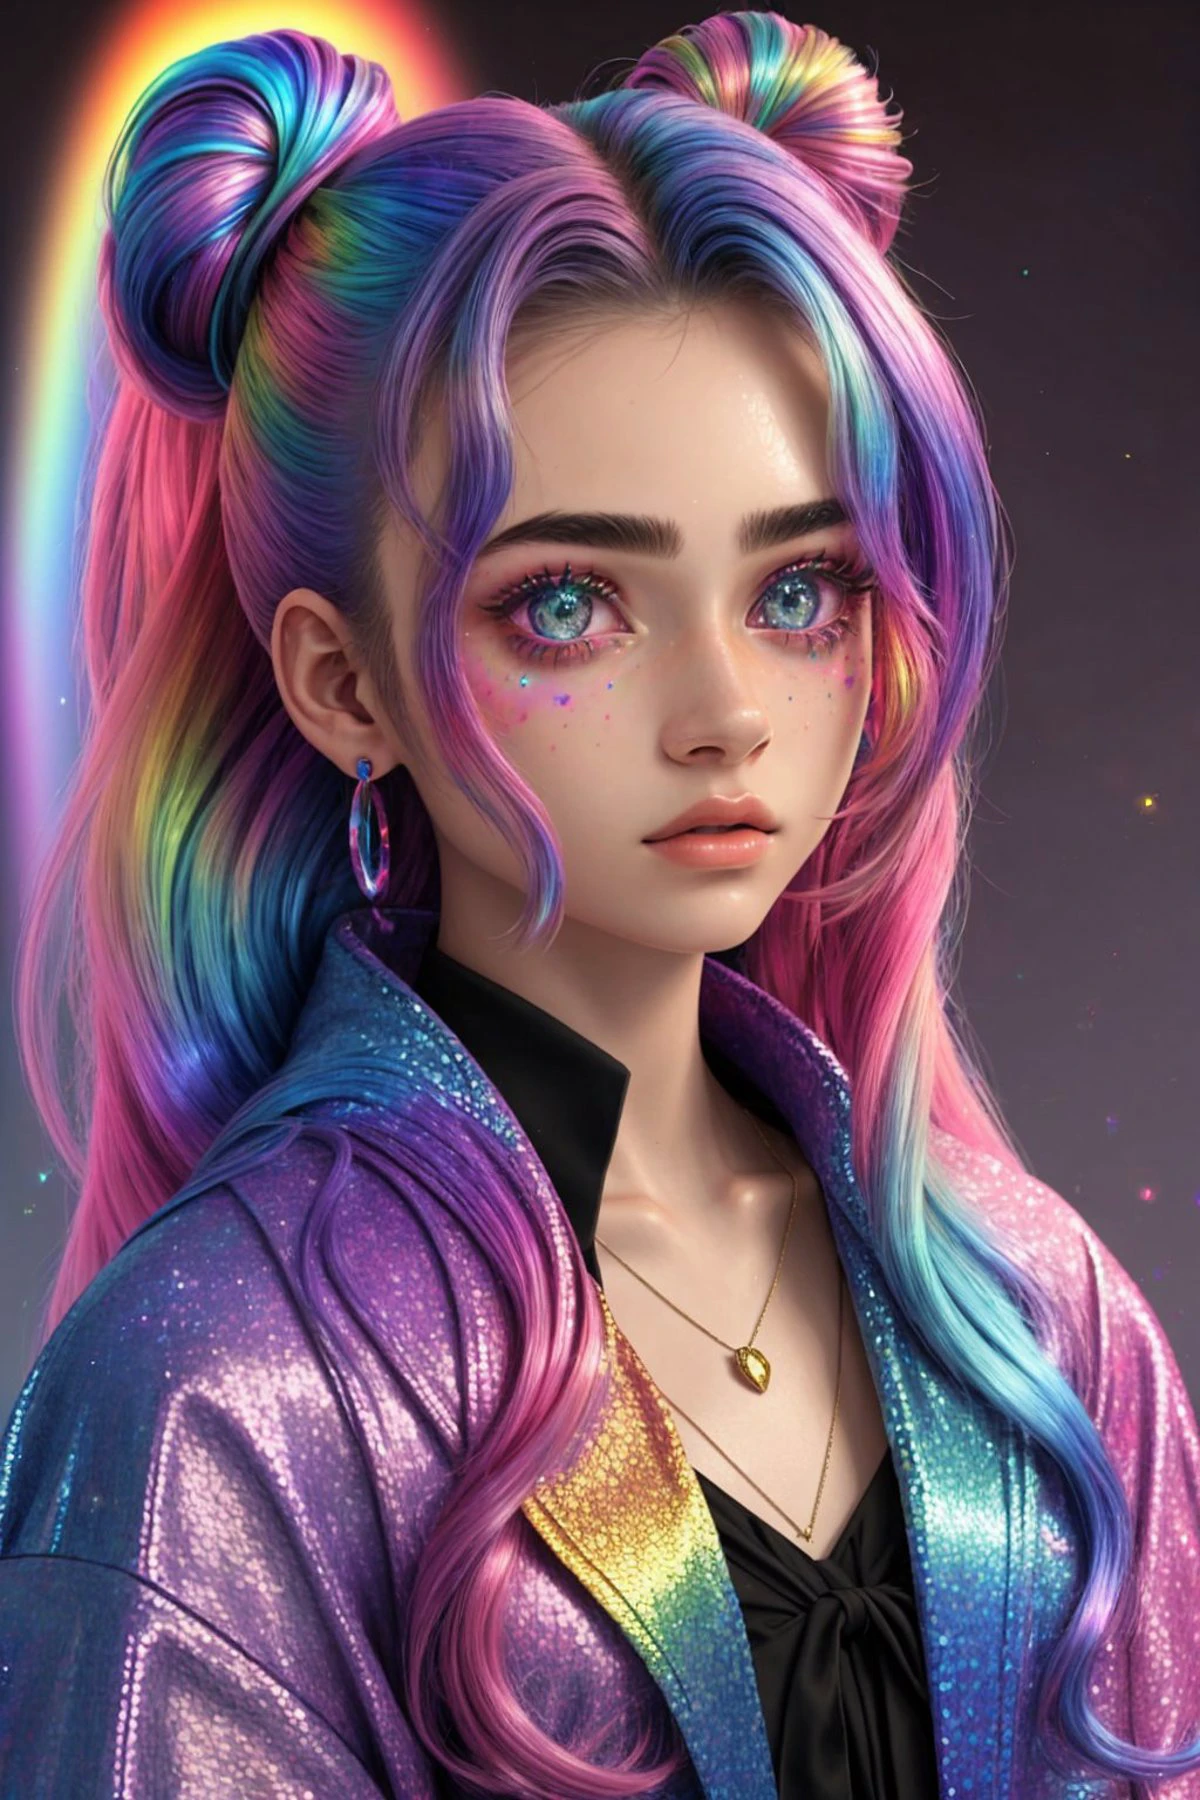 (holografischer Stil, Regenbogen, shimmer, 3D-Effekt, ausführlich:1.15), headshot OliviaChristie, Fokus auf Gesicht, trägt eine Zaubererrobe , ihr Haar ist als halb hochgesteckter Dutt gestylt,